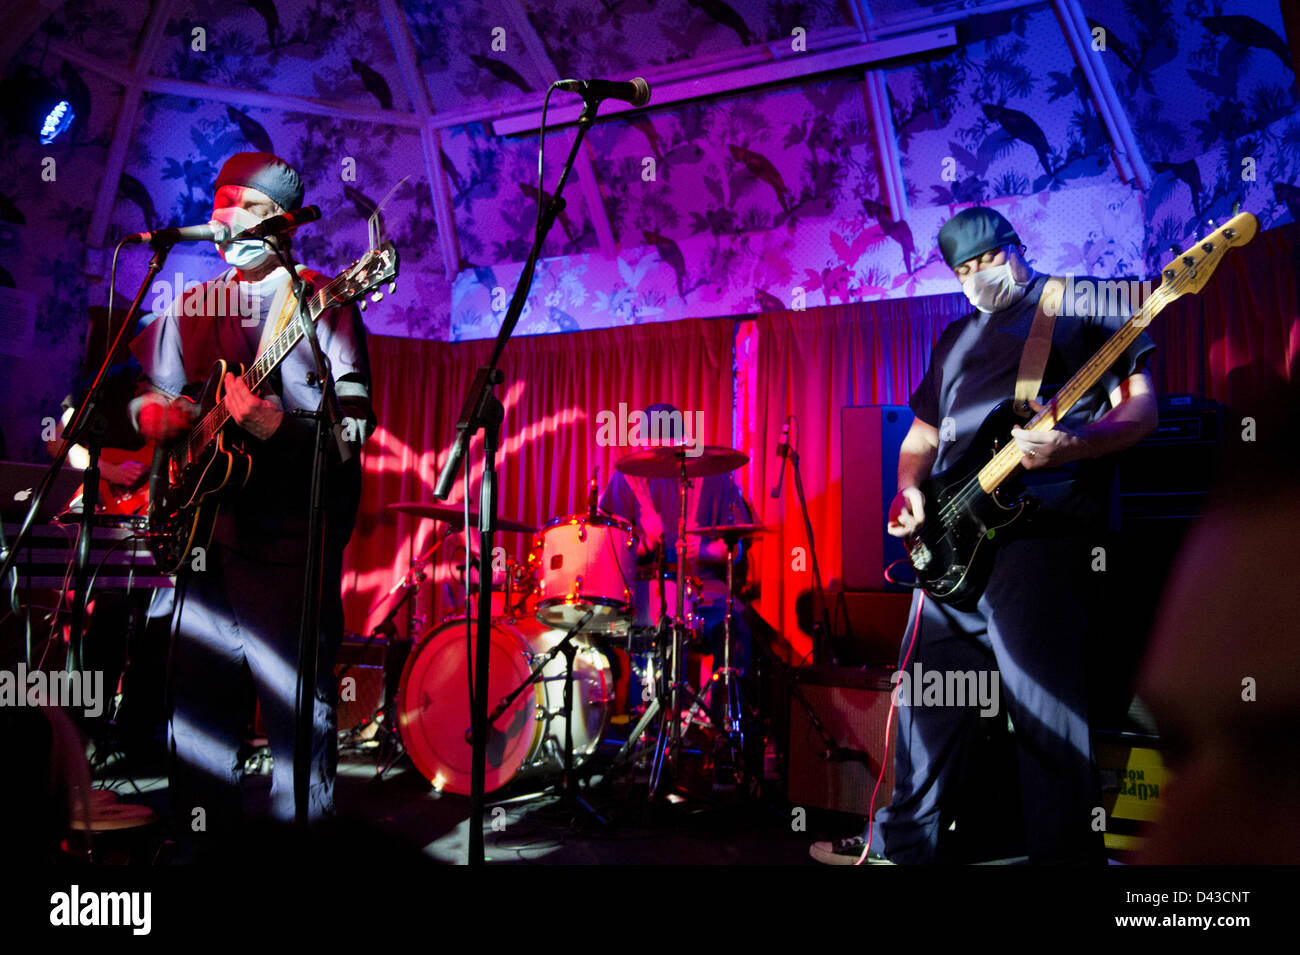 Clinique groupe de rock en concert à l'Institut des sourds, Manchester, le 2 mars 2013. Le groupe en concert avec des masques chirurgicaux et des blouses. Banque D'Images